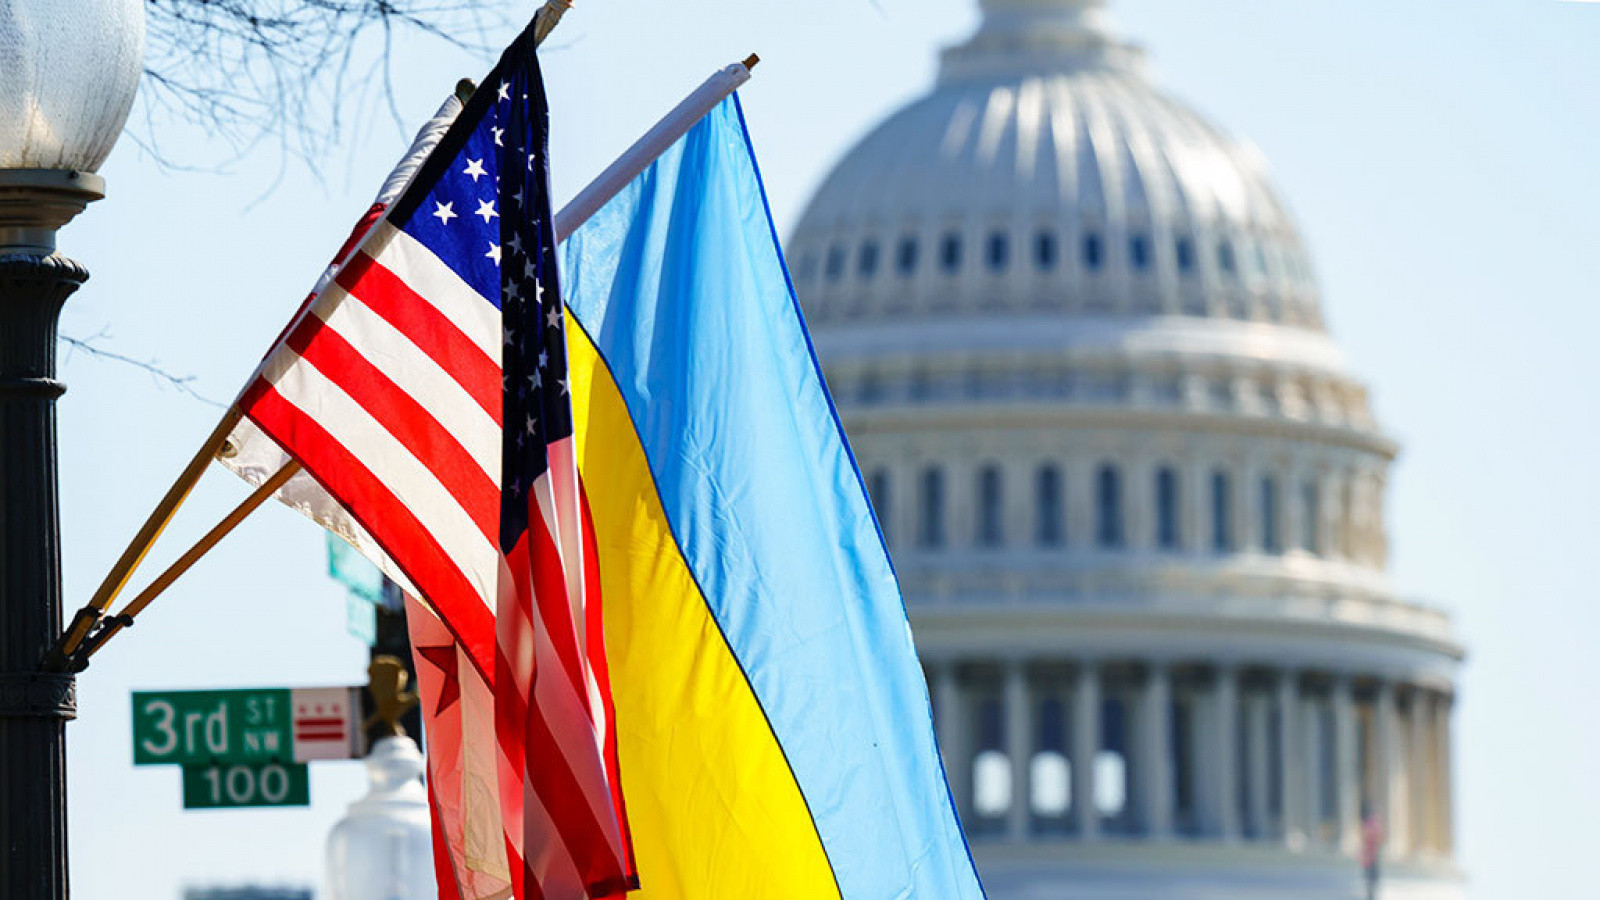 KİV: ABŞ-nin Ukraynanı dəstəkləmək üçün “B planı” yoxdur